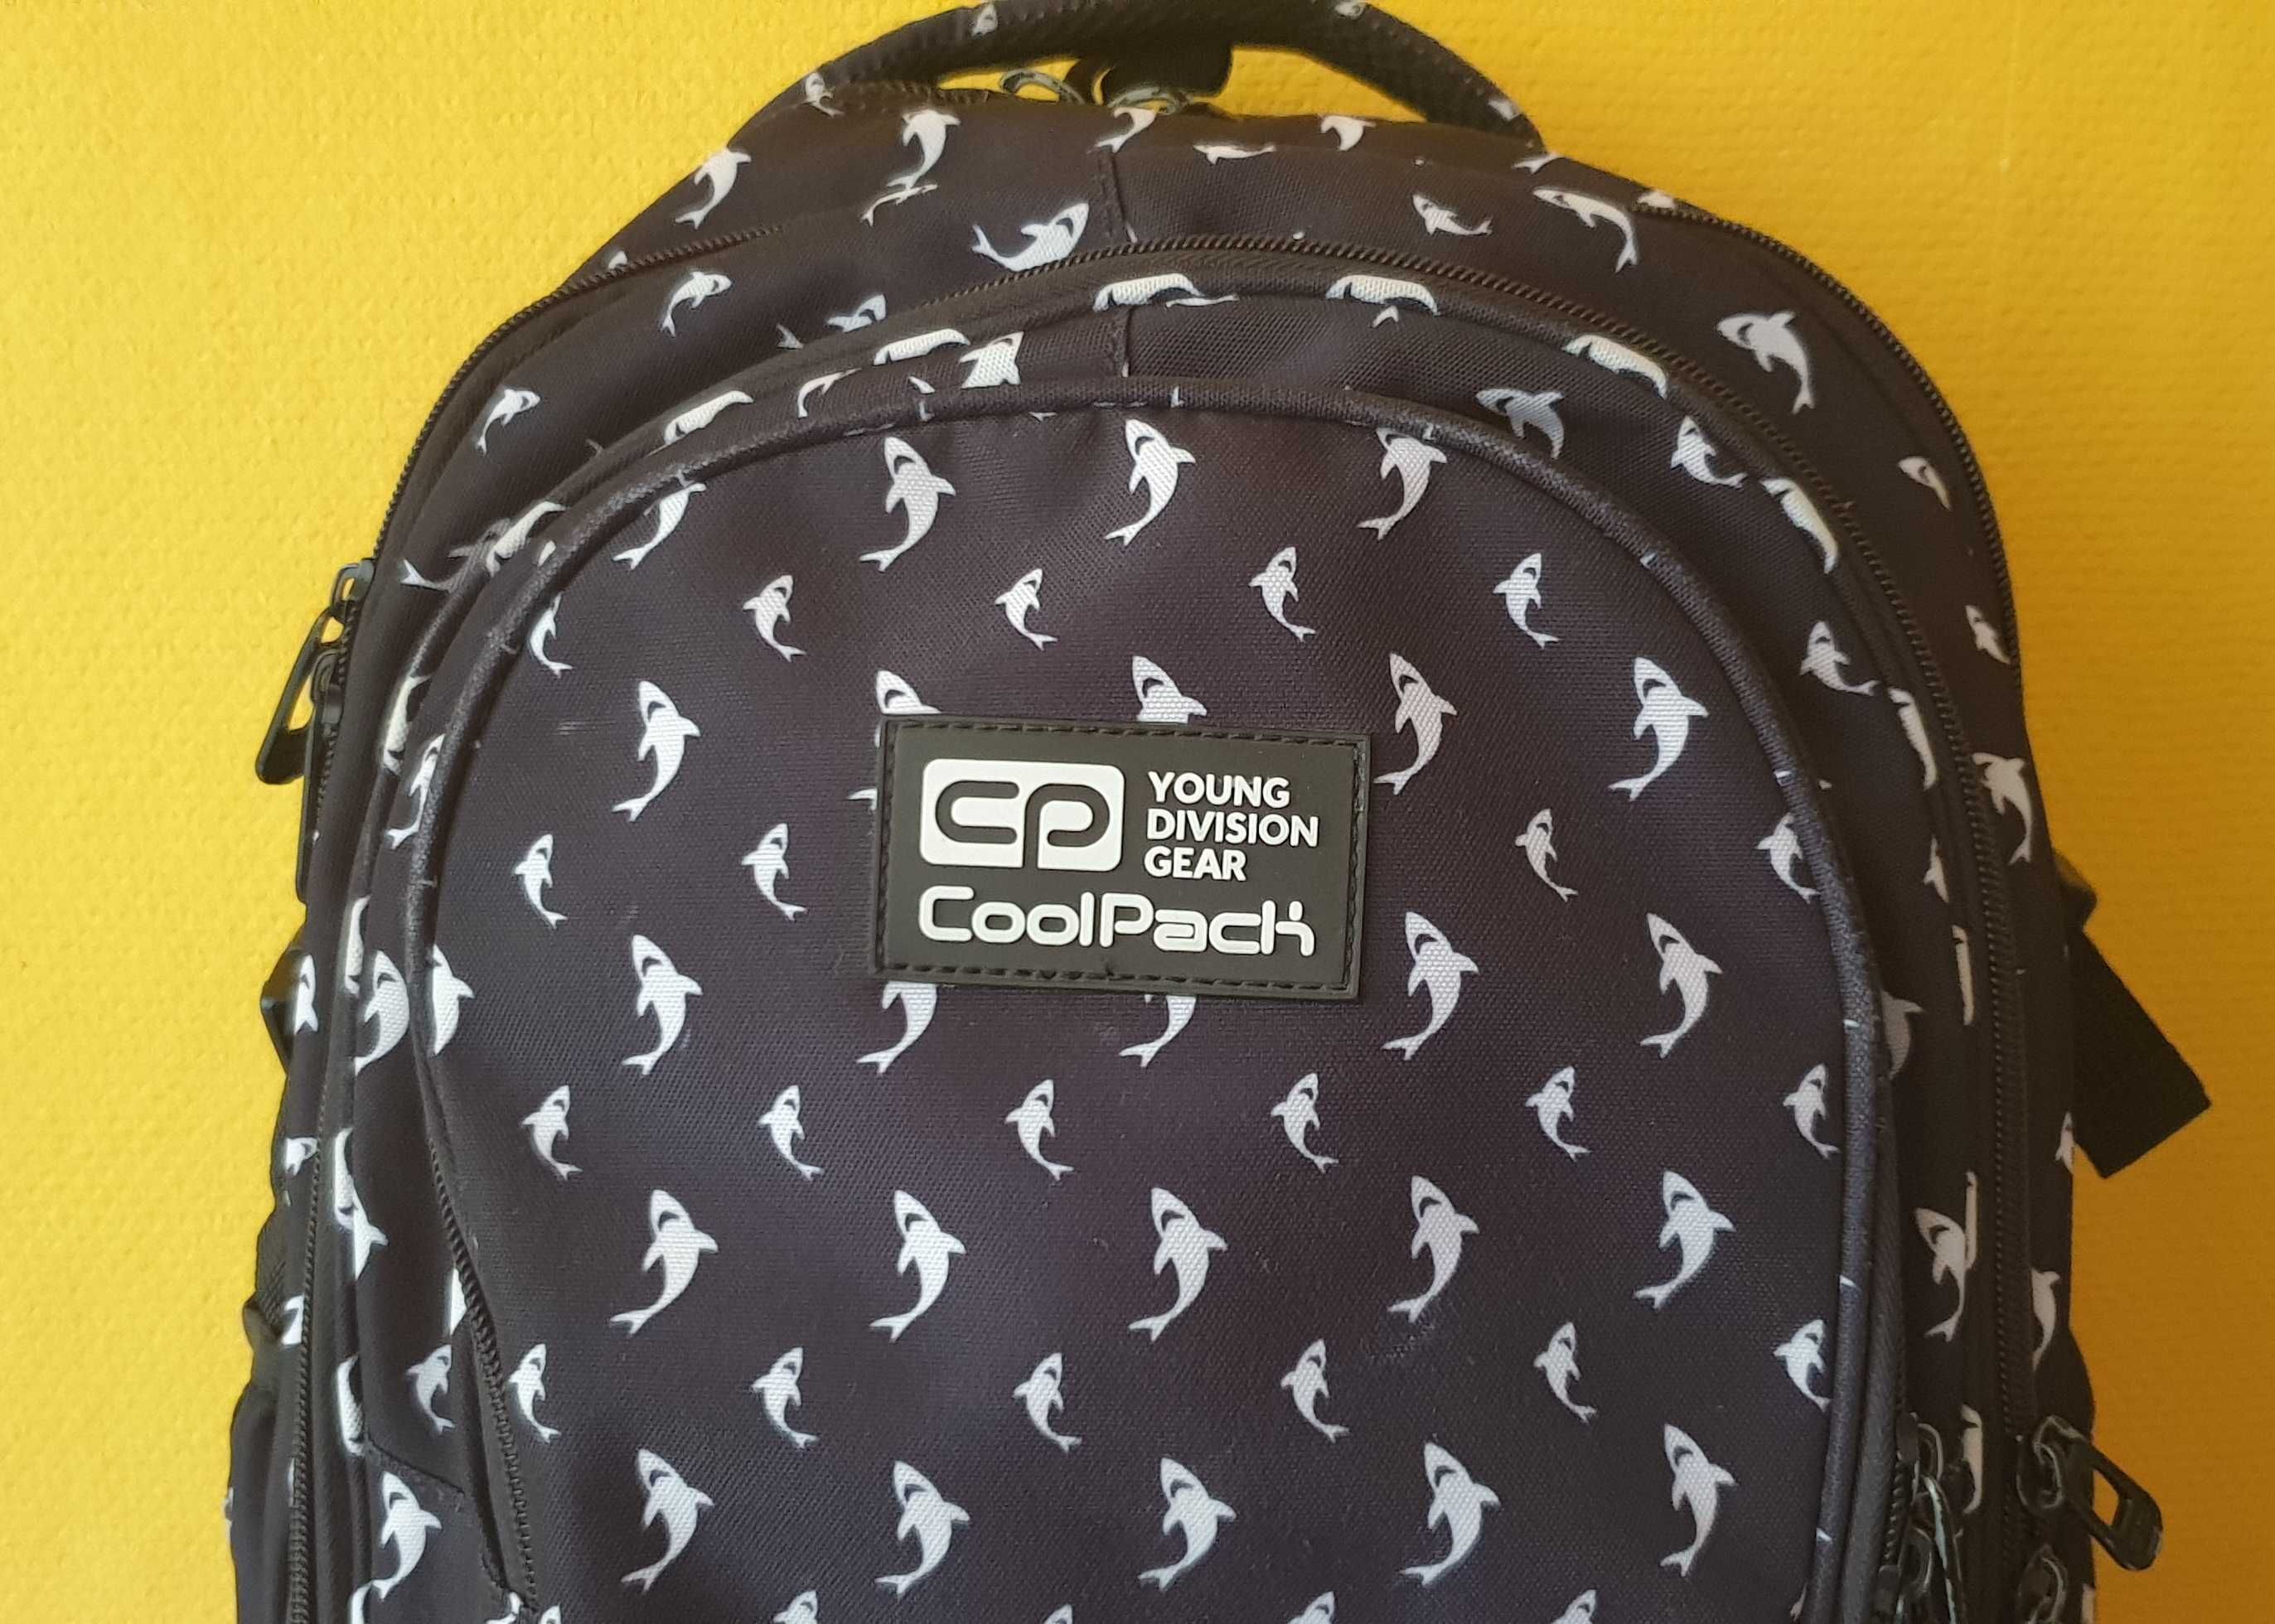 Oryginalny plecak CoolPack